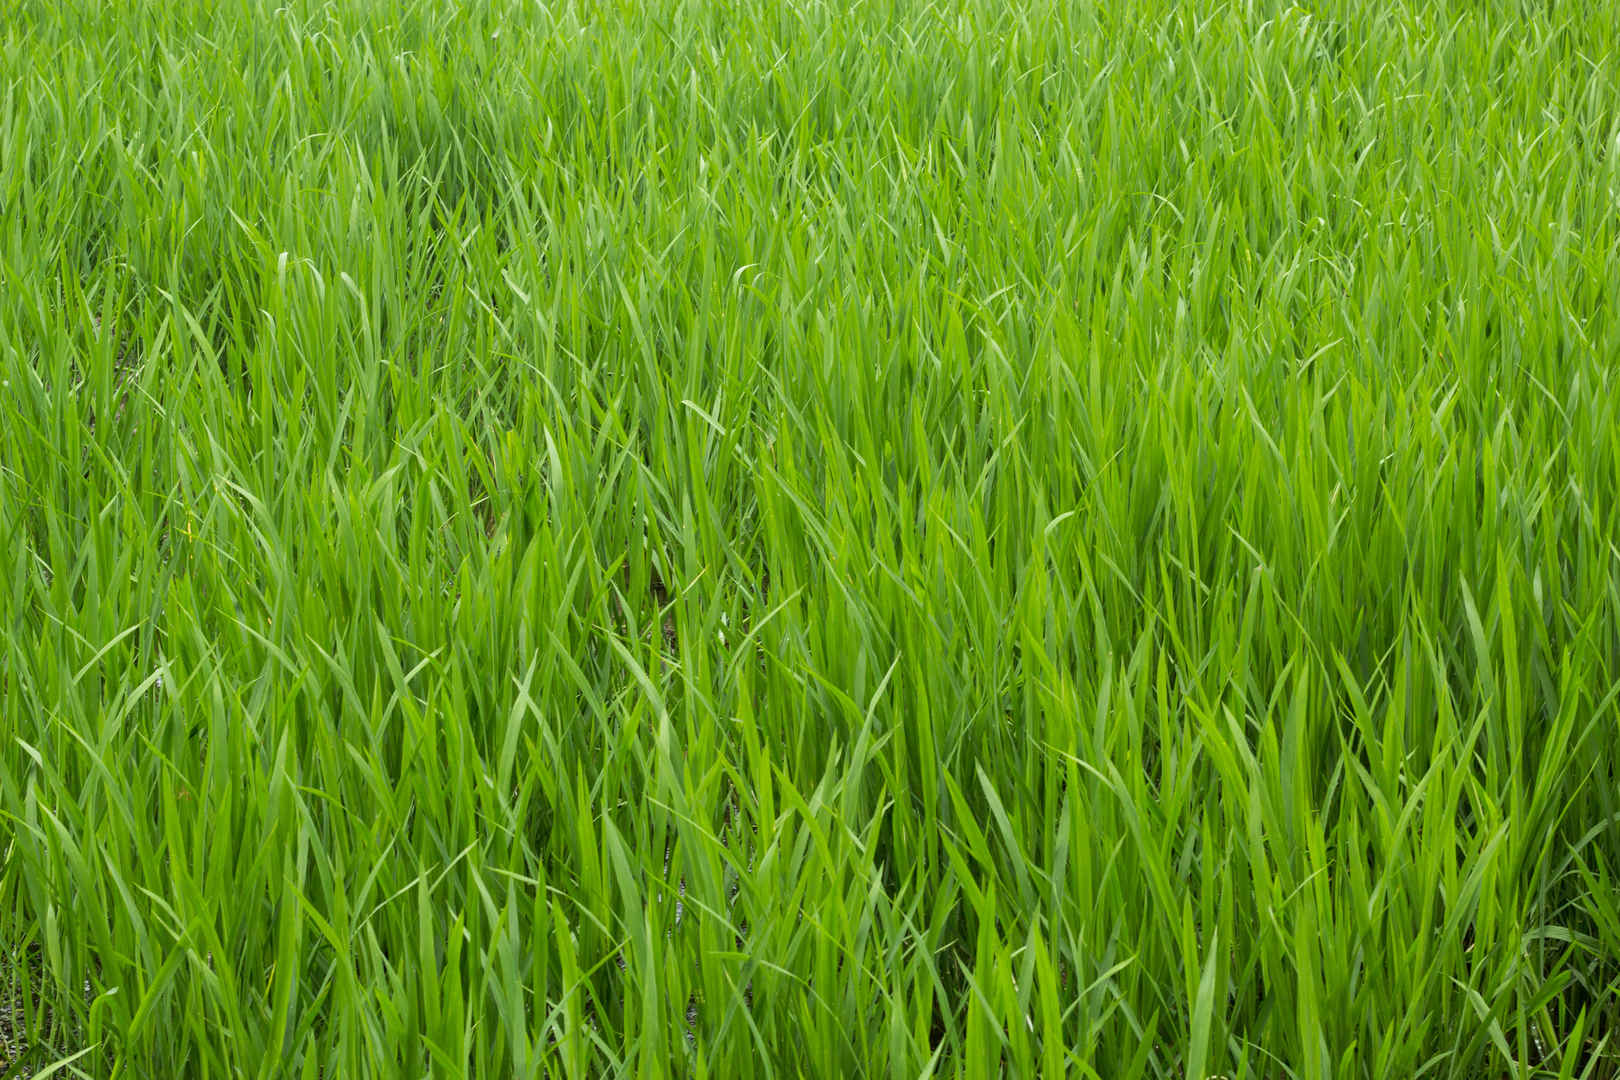 绿油油的水稻稻田图片-